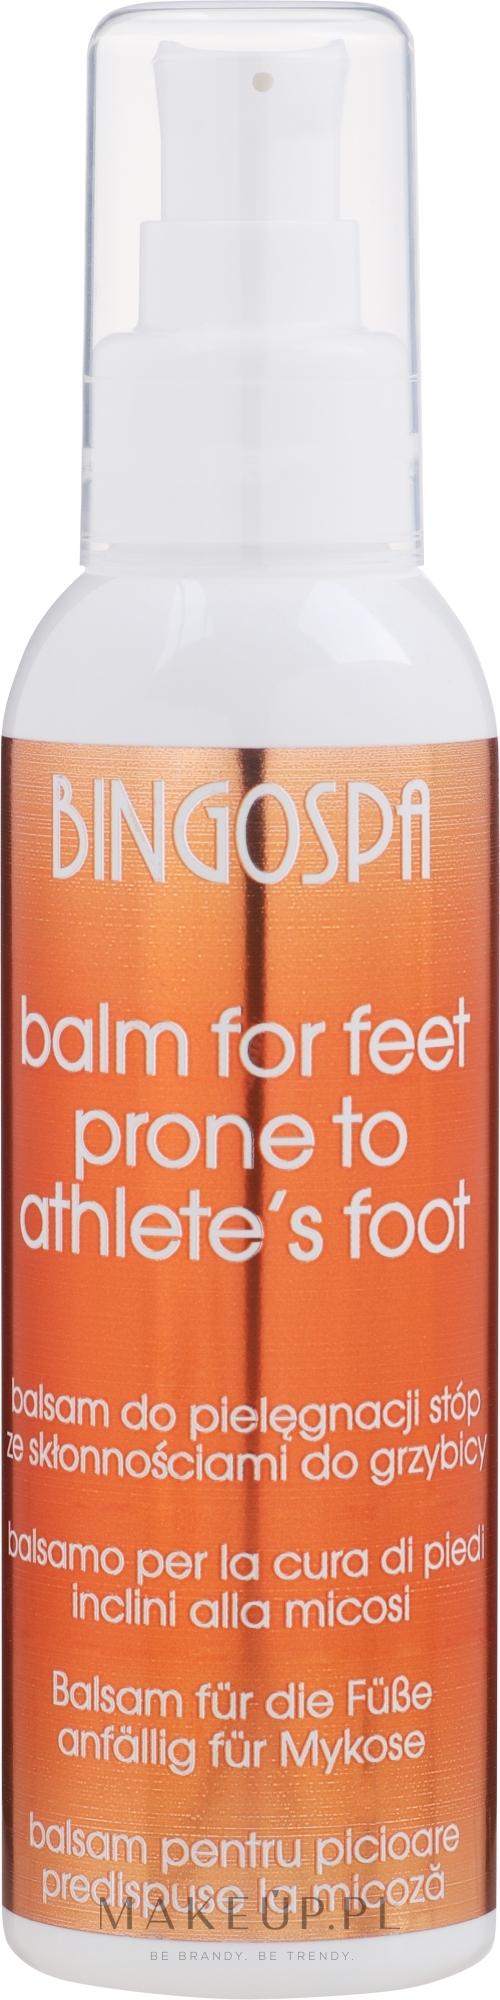 Balsam do pielęgnacji stóp ze skłonnościami do grzybicy i pękania naskórka - BingoSpa Balm For Feet Prone To Athlete's Foot — Zdjęcie 135 g